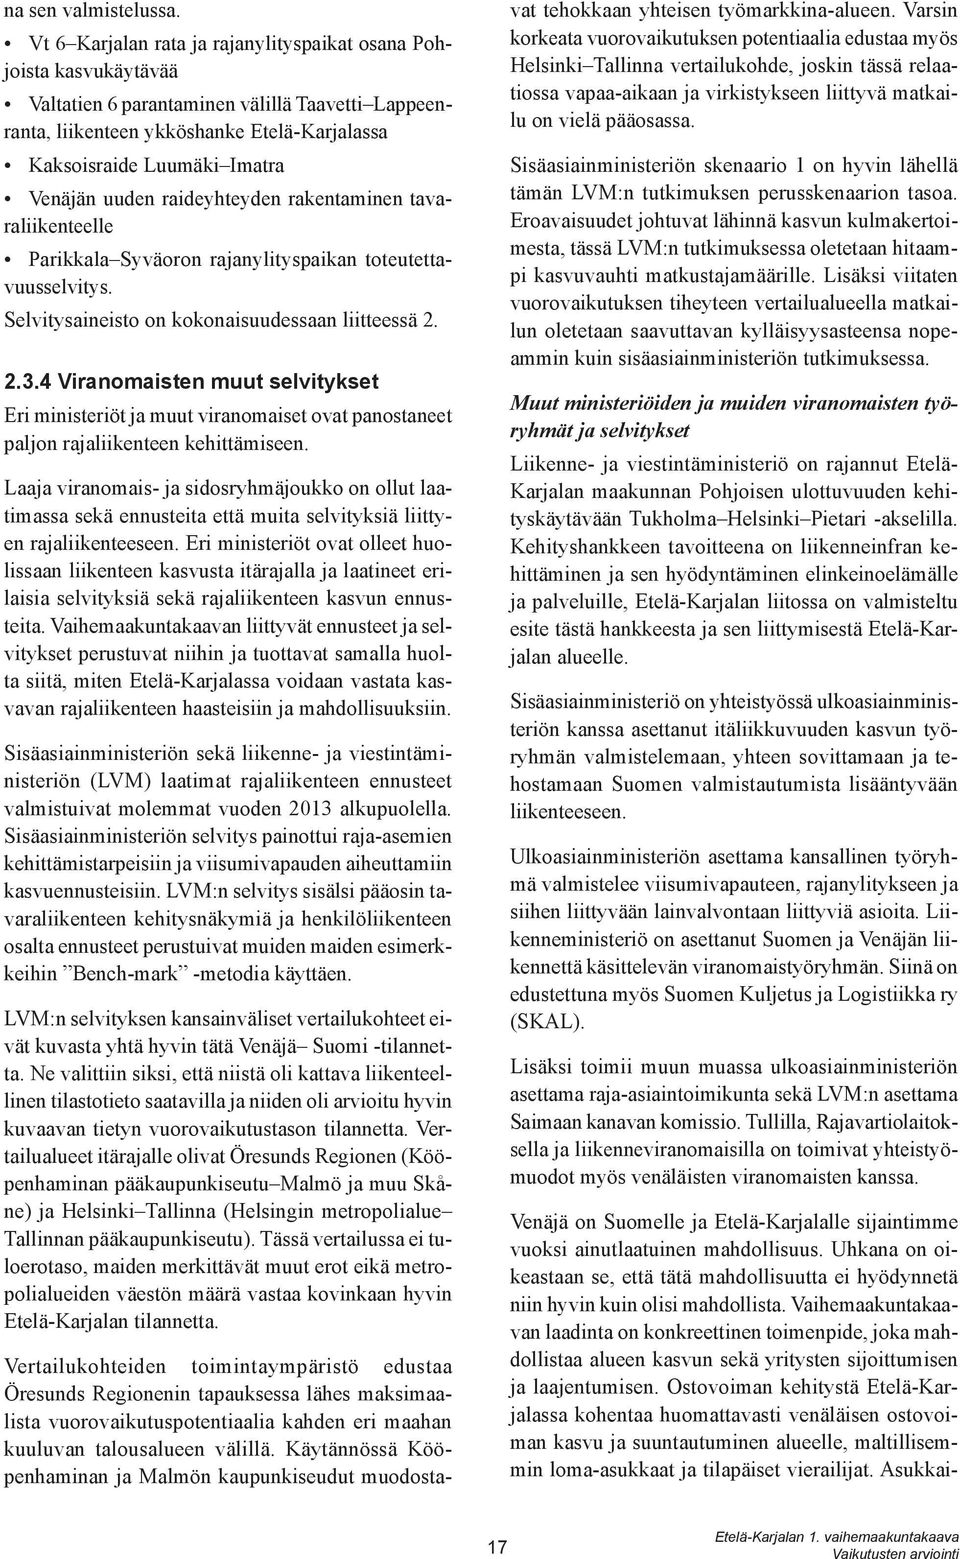 Venäjän uuden raideyhteyden rakentaminen tavaraliikenteelle Parikkala Syväoron rajanylityspaikan toteutettavuusselvitys. Selvitysaineisto on kokonaisuudessaan liitteessä 2. 2.3.